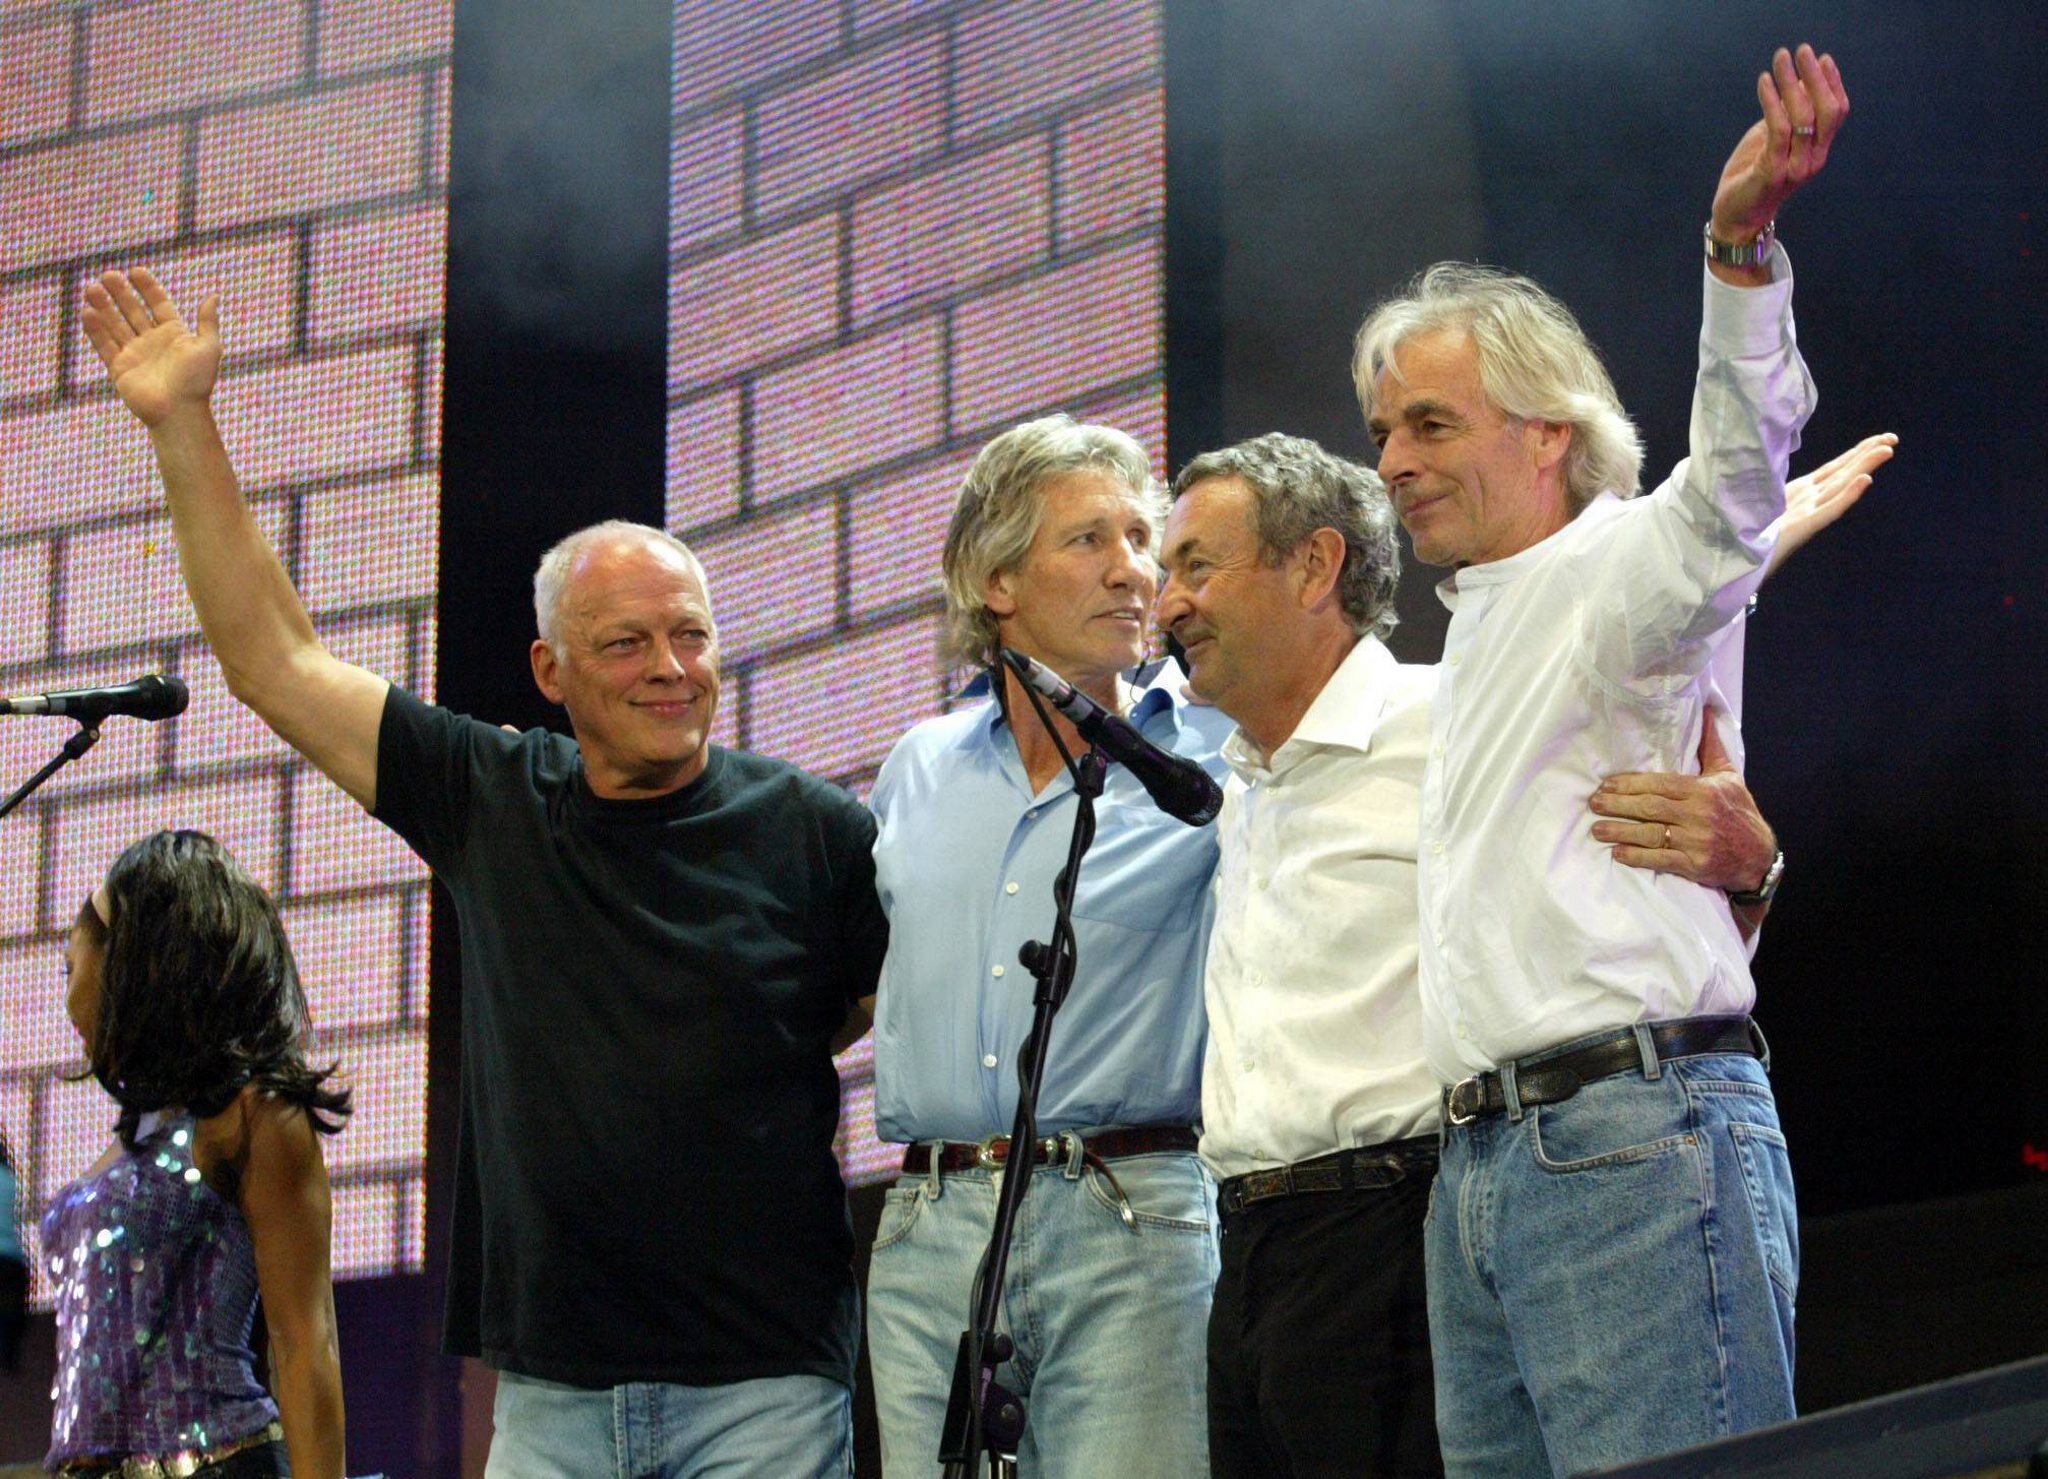 El grupo Pink Floyd reunido por primera vez en 20 años tocó en el concierto Live 8, celebrado en Hyde Park (oeste de Londres),en 2005 el sábado 2 de julio. Esta fue la última vez que los miembros originales de la banda tocaron juntos en un escenario. En la foto: David Gilmour, Roger Waters, Nick Mason y  Richard Wright, 

